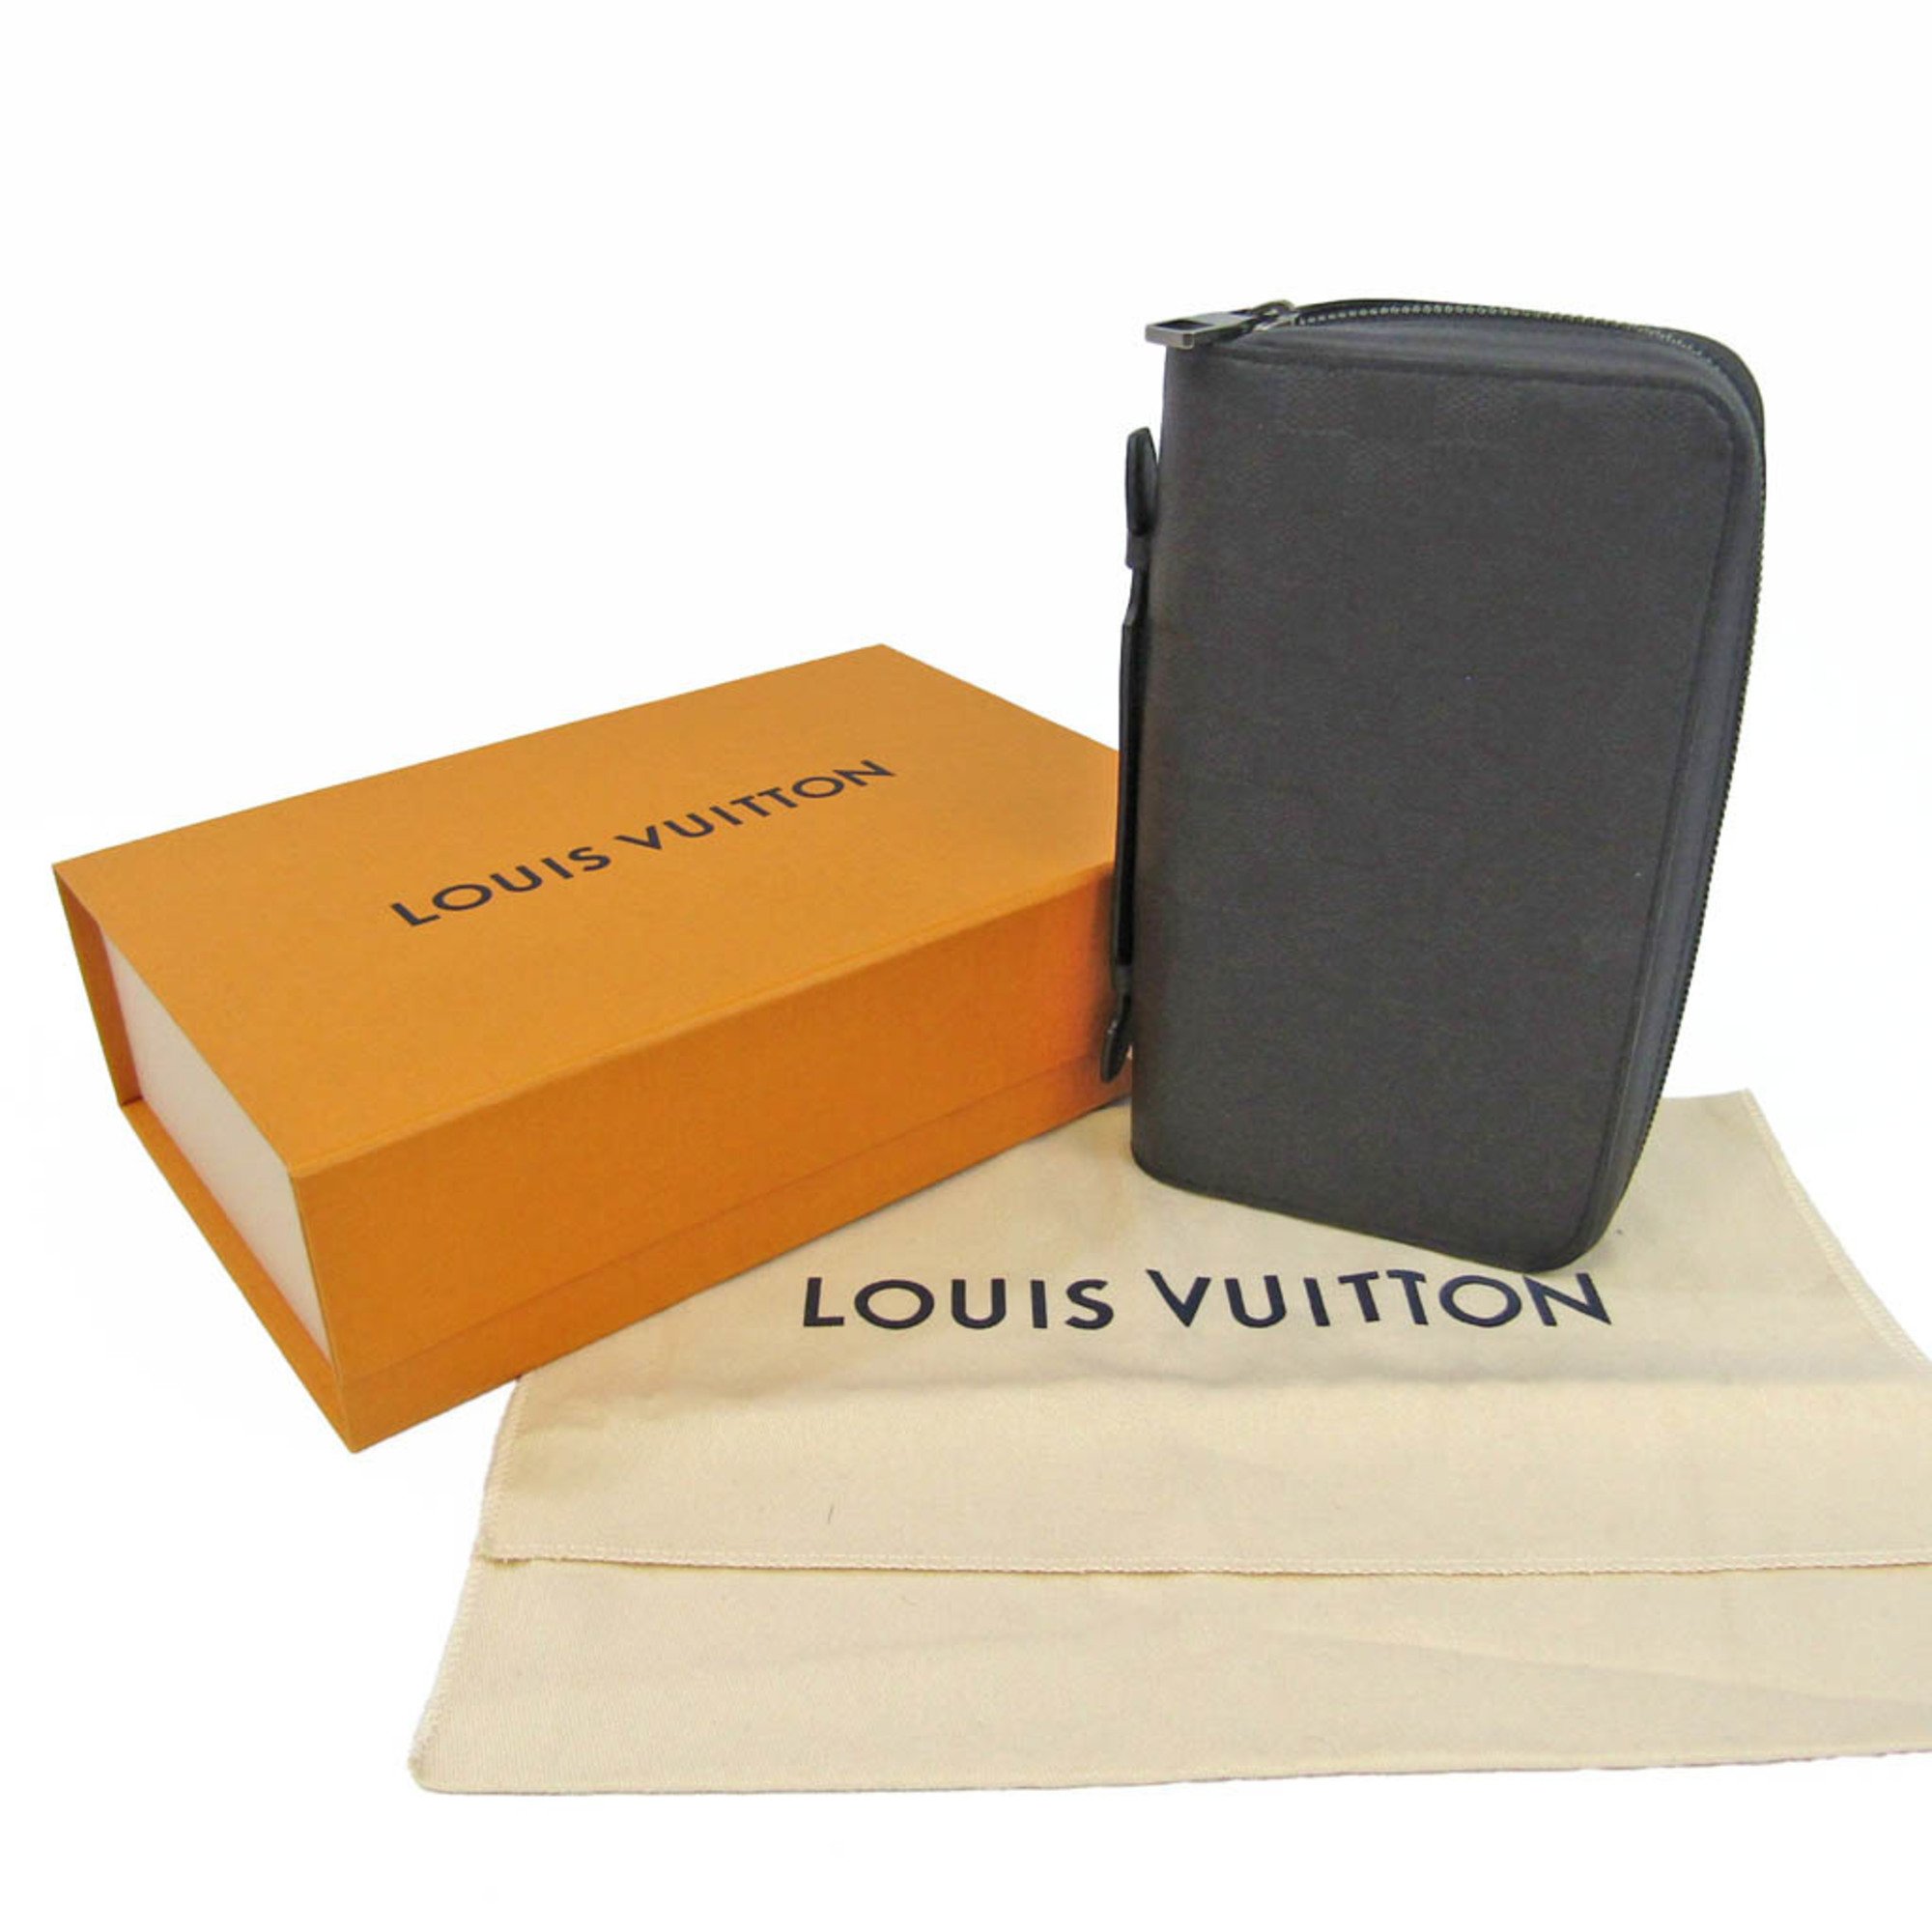 ルイ・ヴィトン (Louis Vuitton) ダミエアンフィニ ジッピー XL N61254